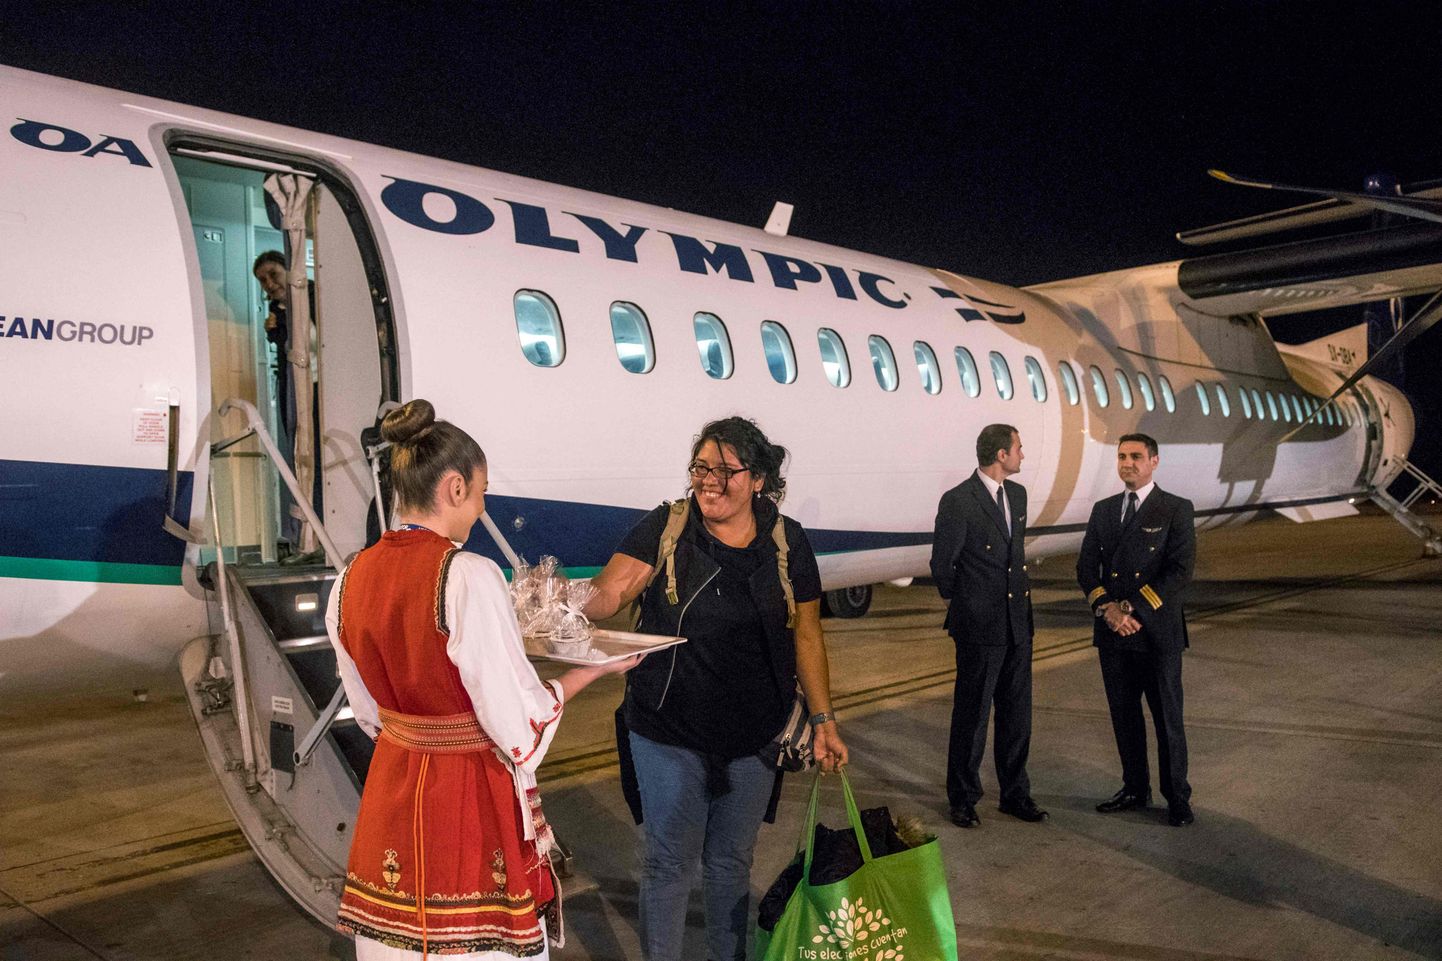 Eile õhtul esimese lennuga Ateenast Skopjesse saabunud reisijaid tervitati Makedoonias maiustustega.